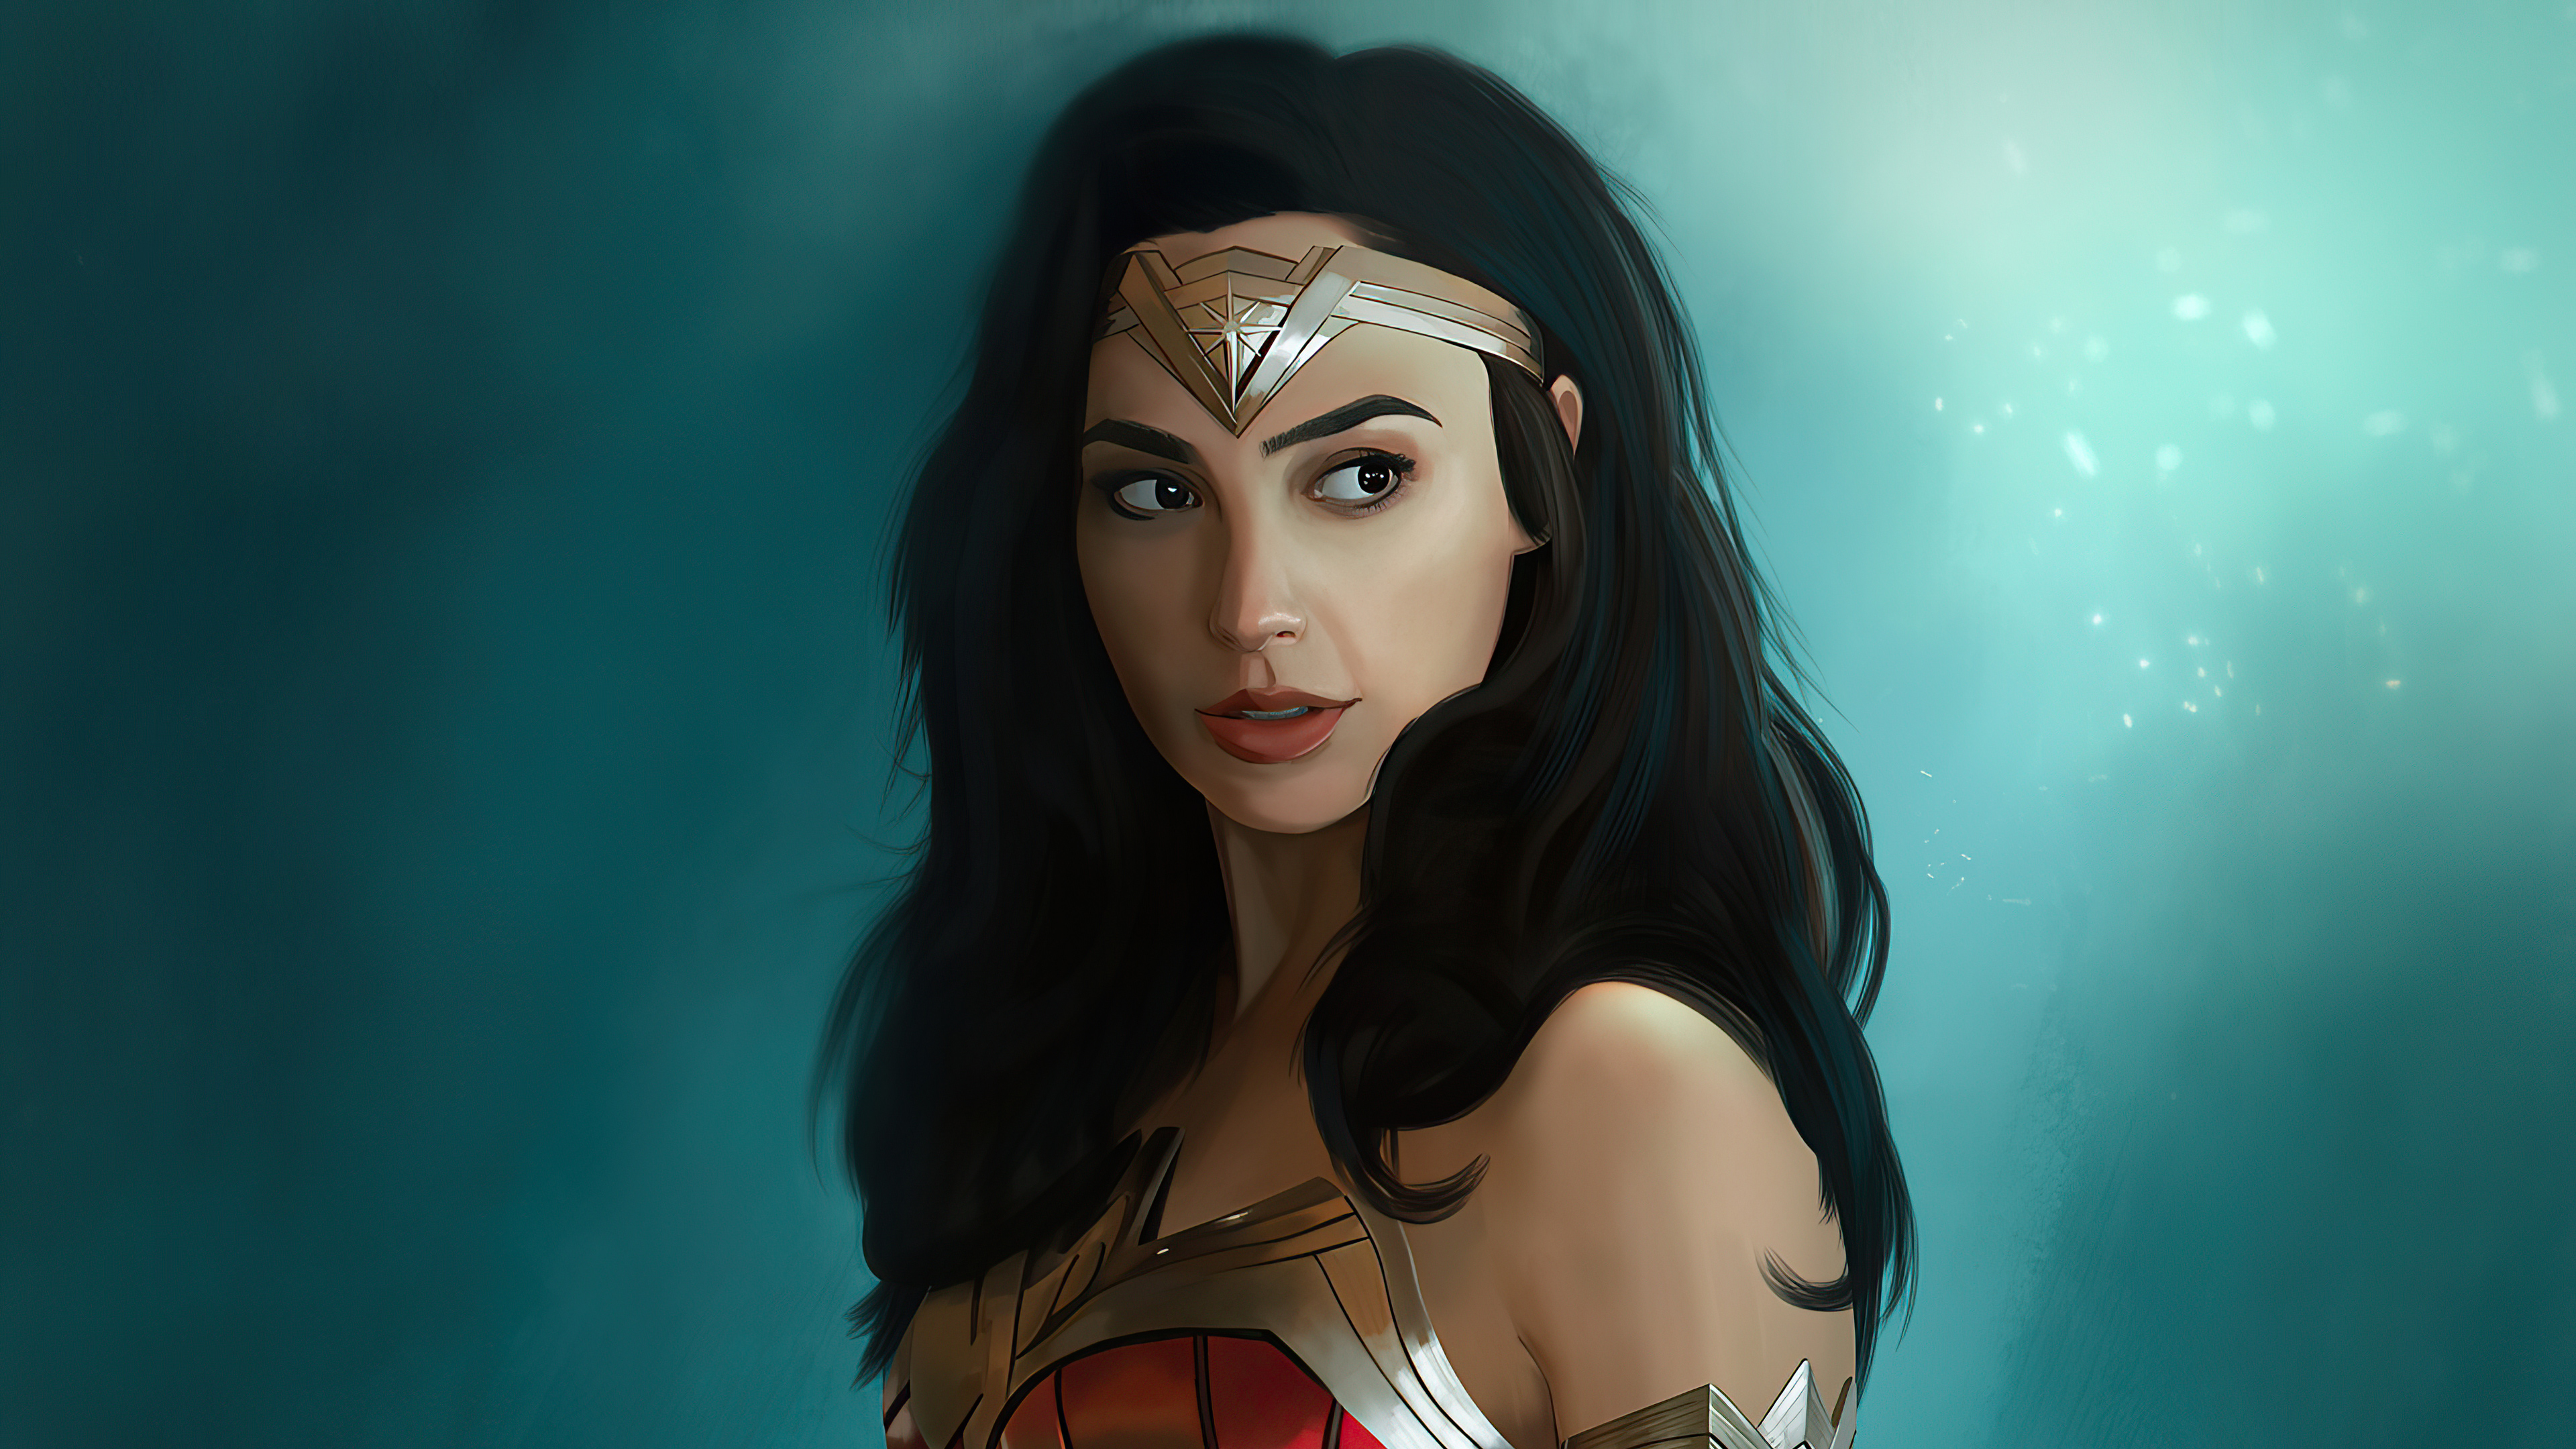 Wonder Woman Gal Gadot 2020 4k Hd Superheroes 4k Wallpapers Images 